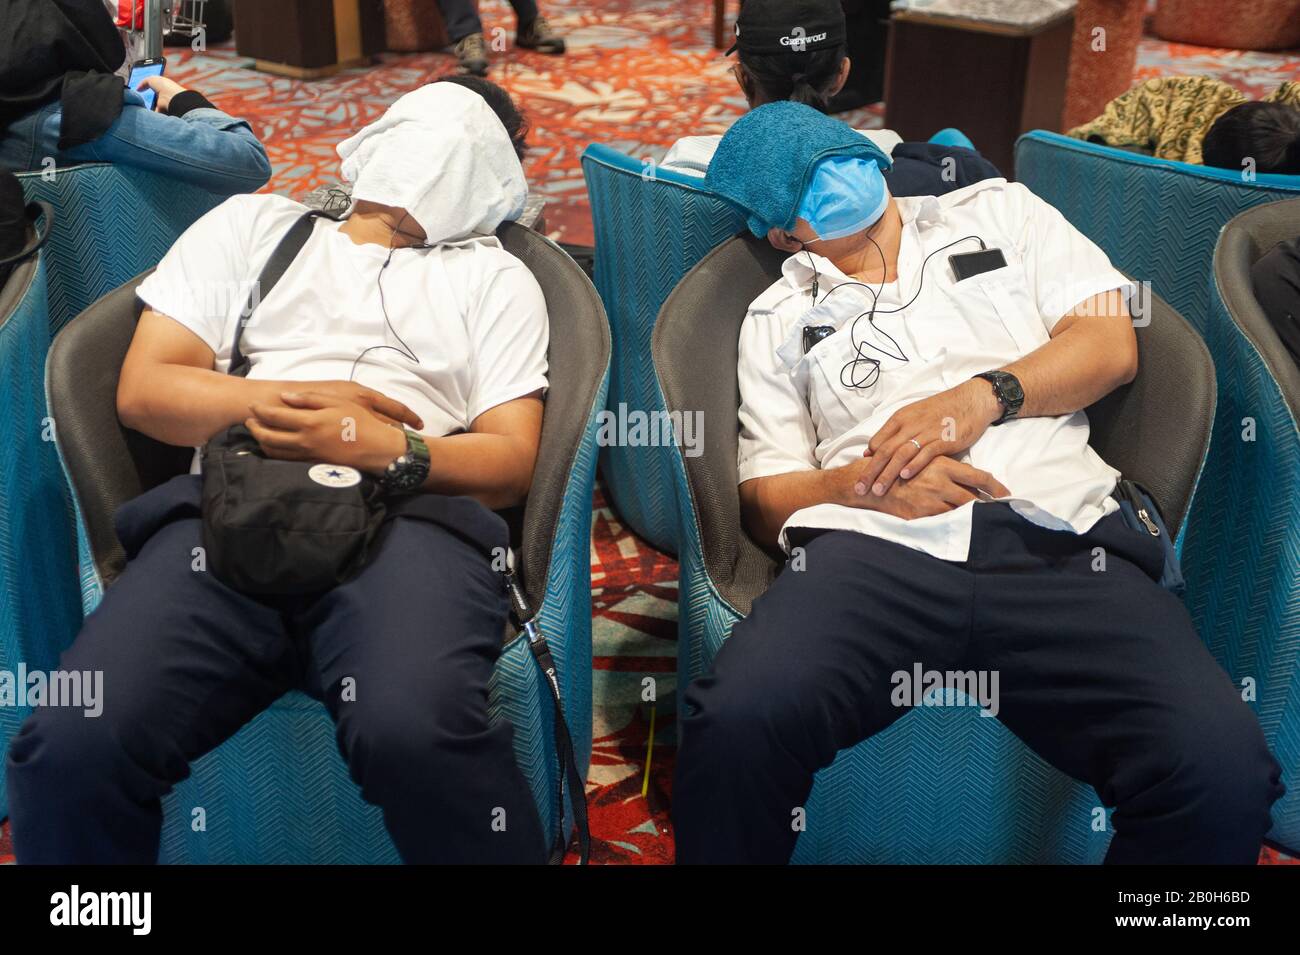 31.01.2020, Singapour, Singapour - Deux voyageurs aériens ont couvert leur visage avec des serviettes et dorment dans des fauteuils dans la zone d'arrivée de Termi Banque D'Images